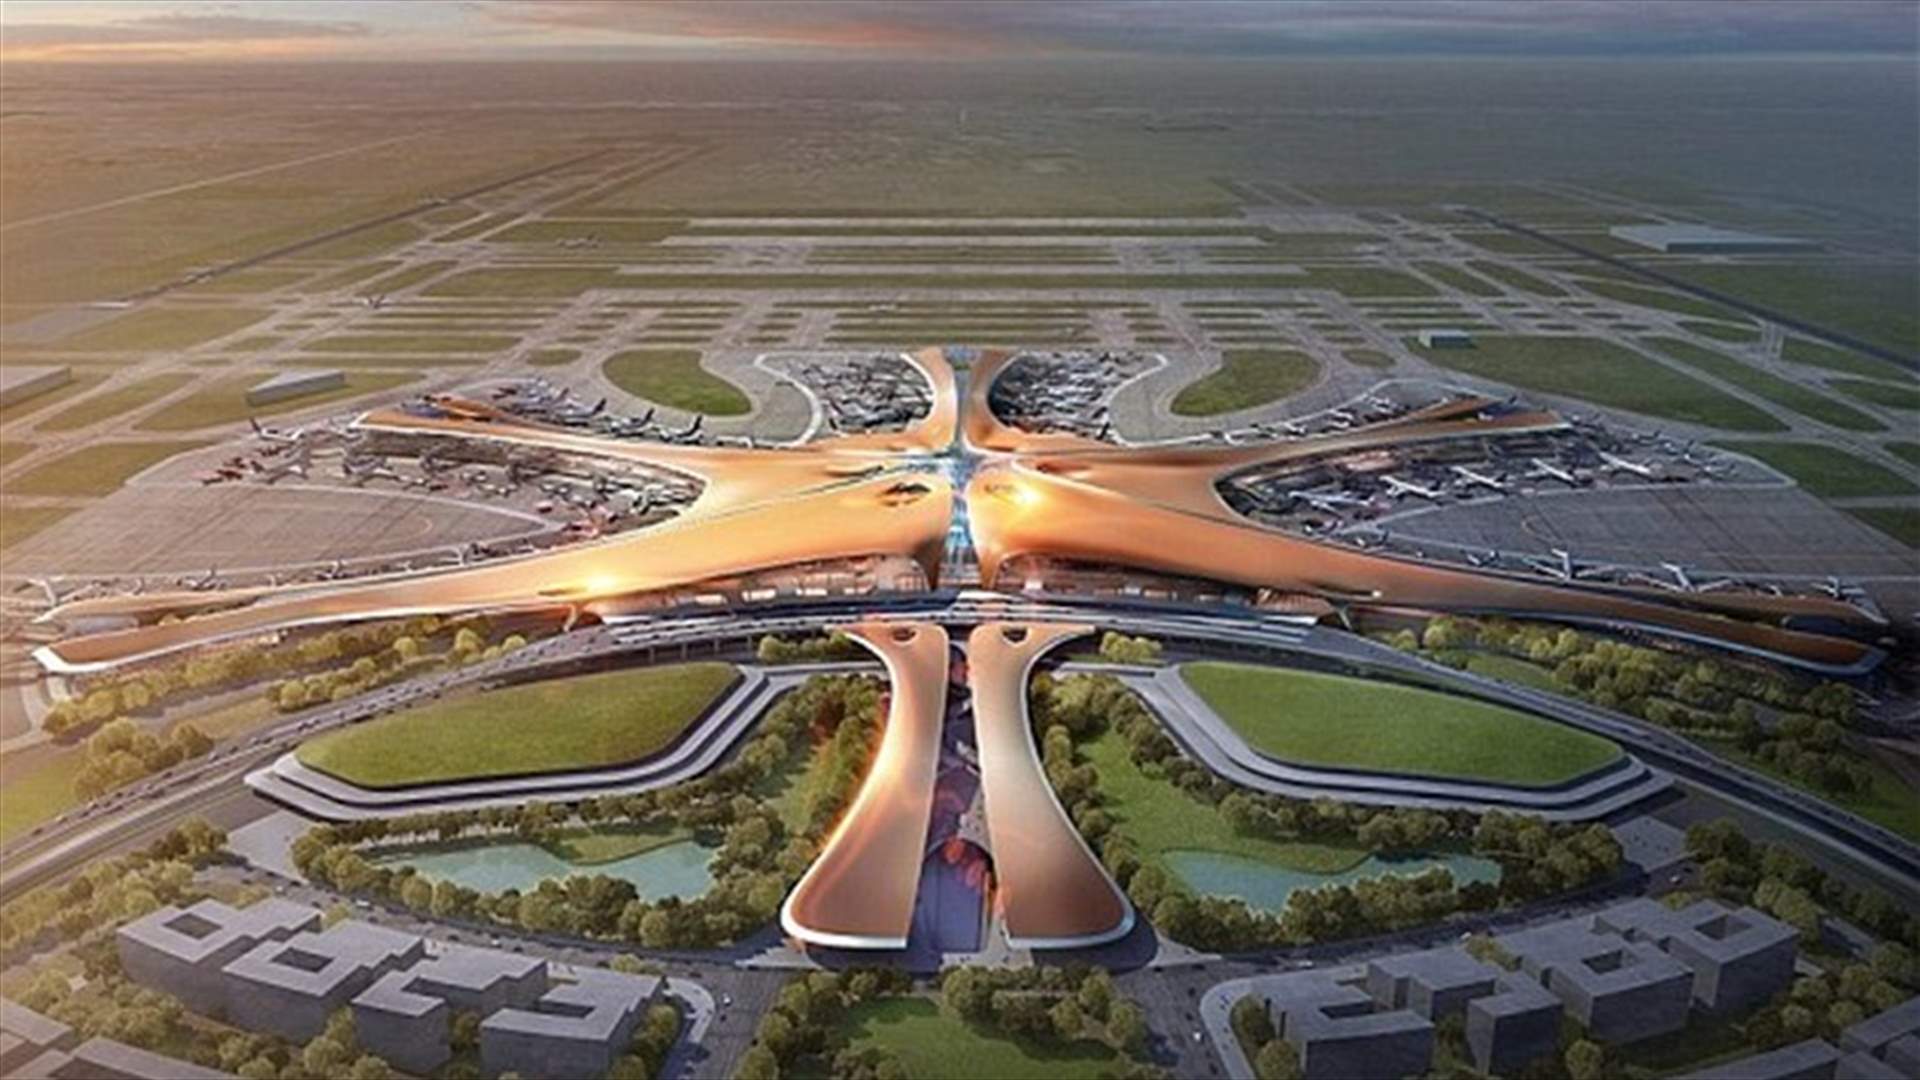 بالصور: أكبر مطار في العالم من تصميم زها حديد يتعرّض للسخريّة في الصين